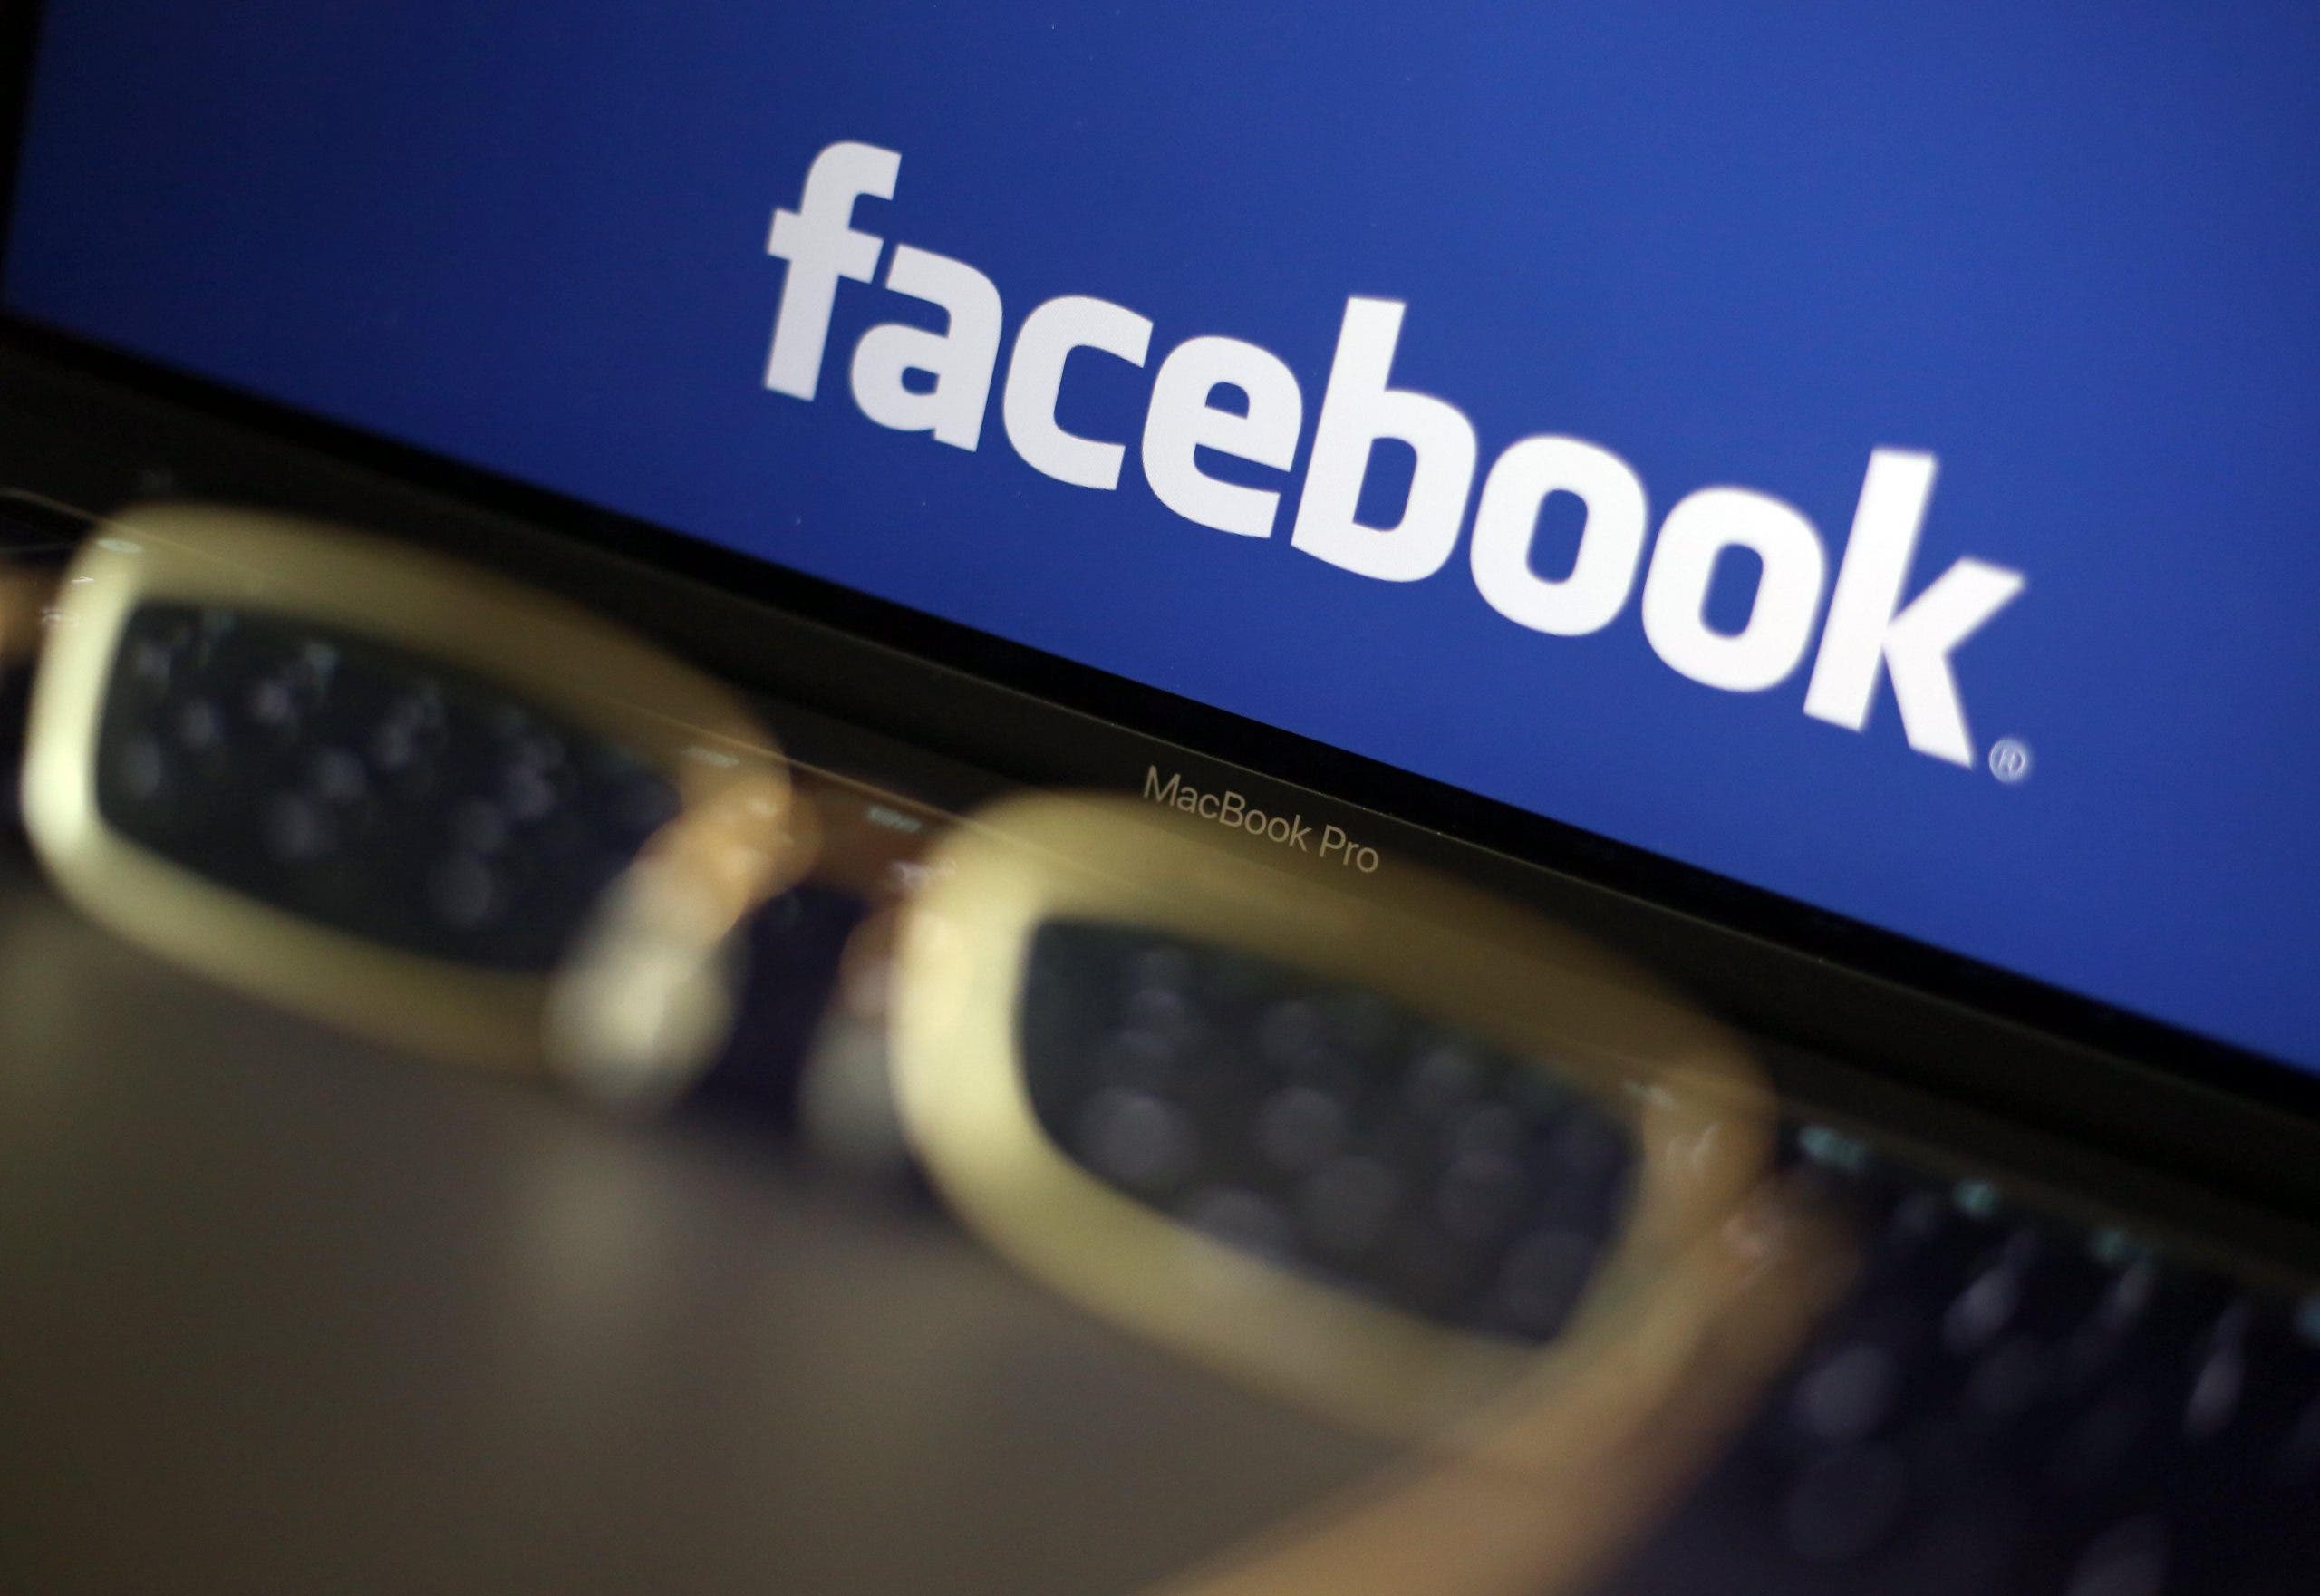 Facebook endurece las medidas contra los grupos que violan sus normas de uso